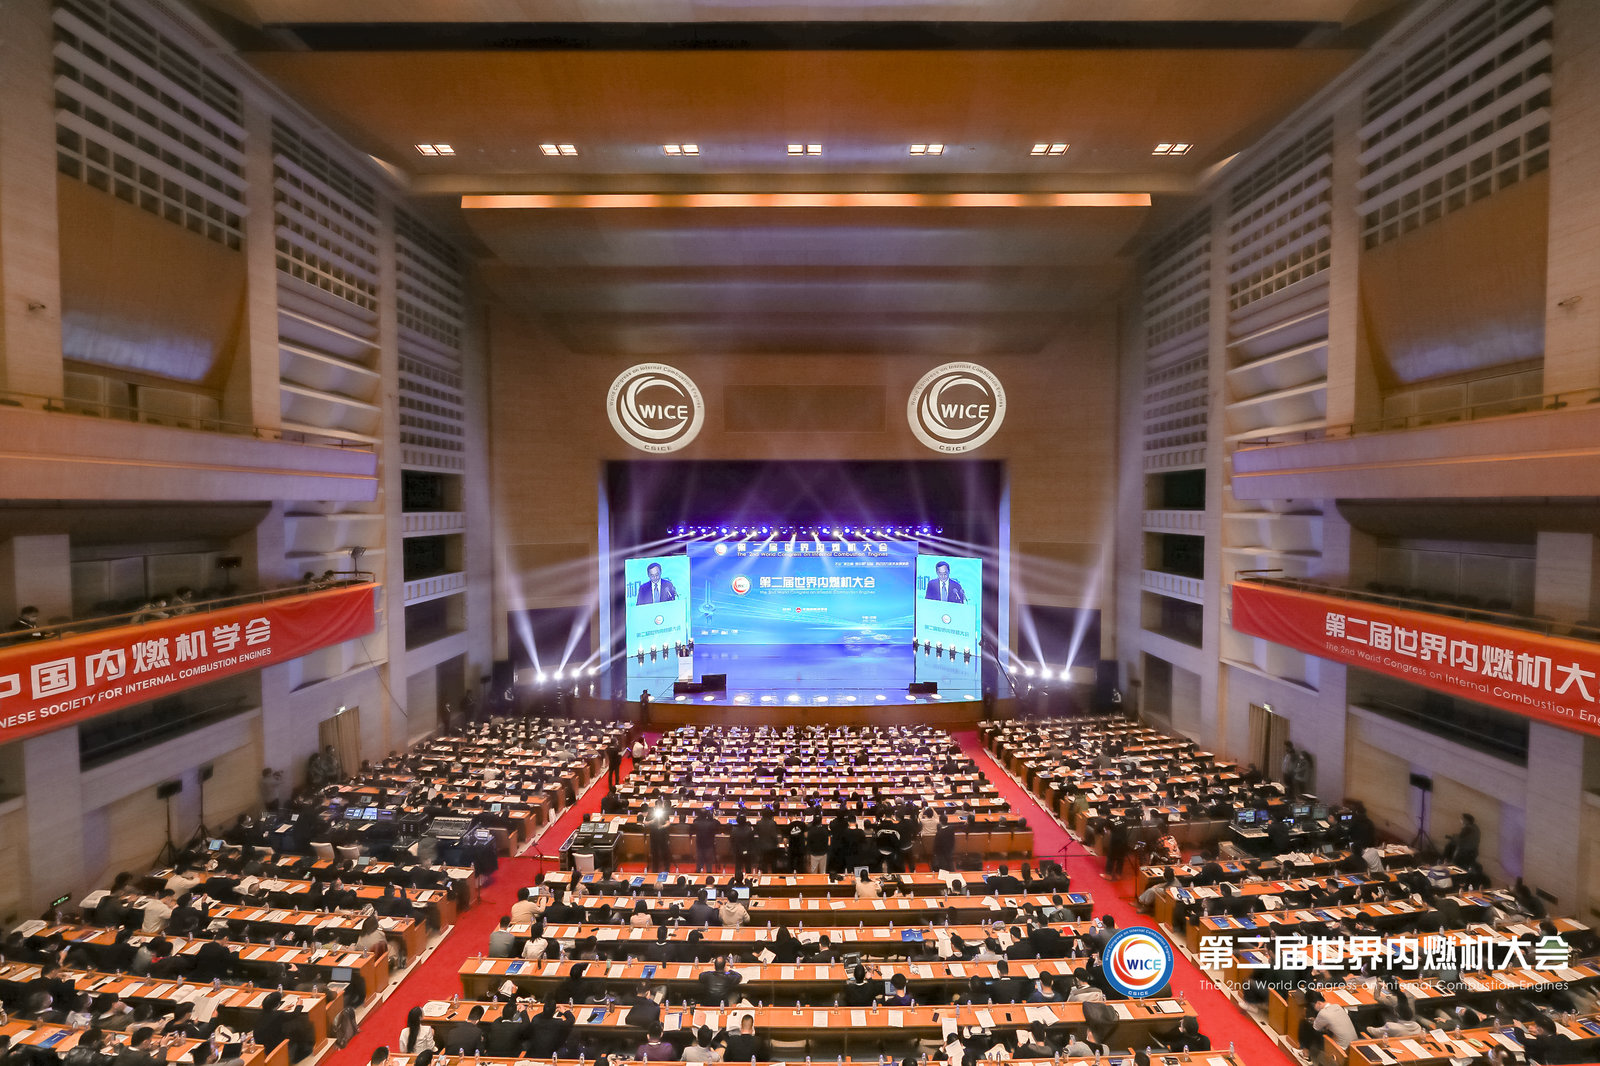 第二届世界内燃机大会在山东济南召开 聚焦“碳达峰、碳中和”开展国际学术交流